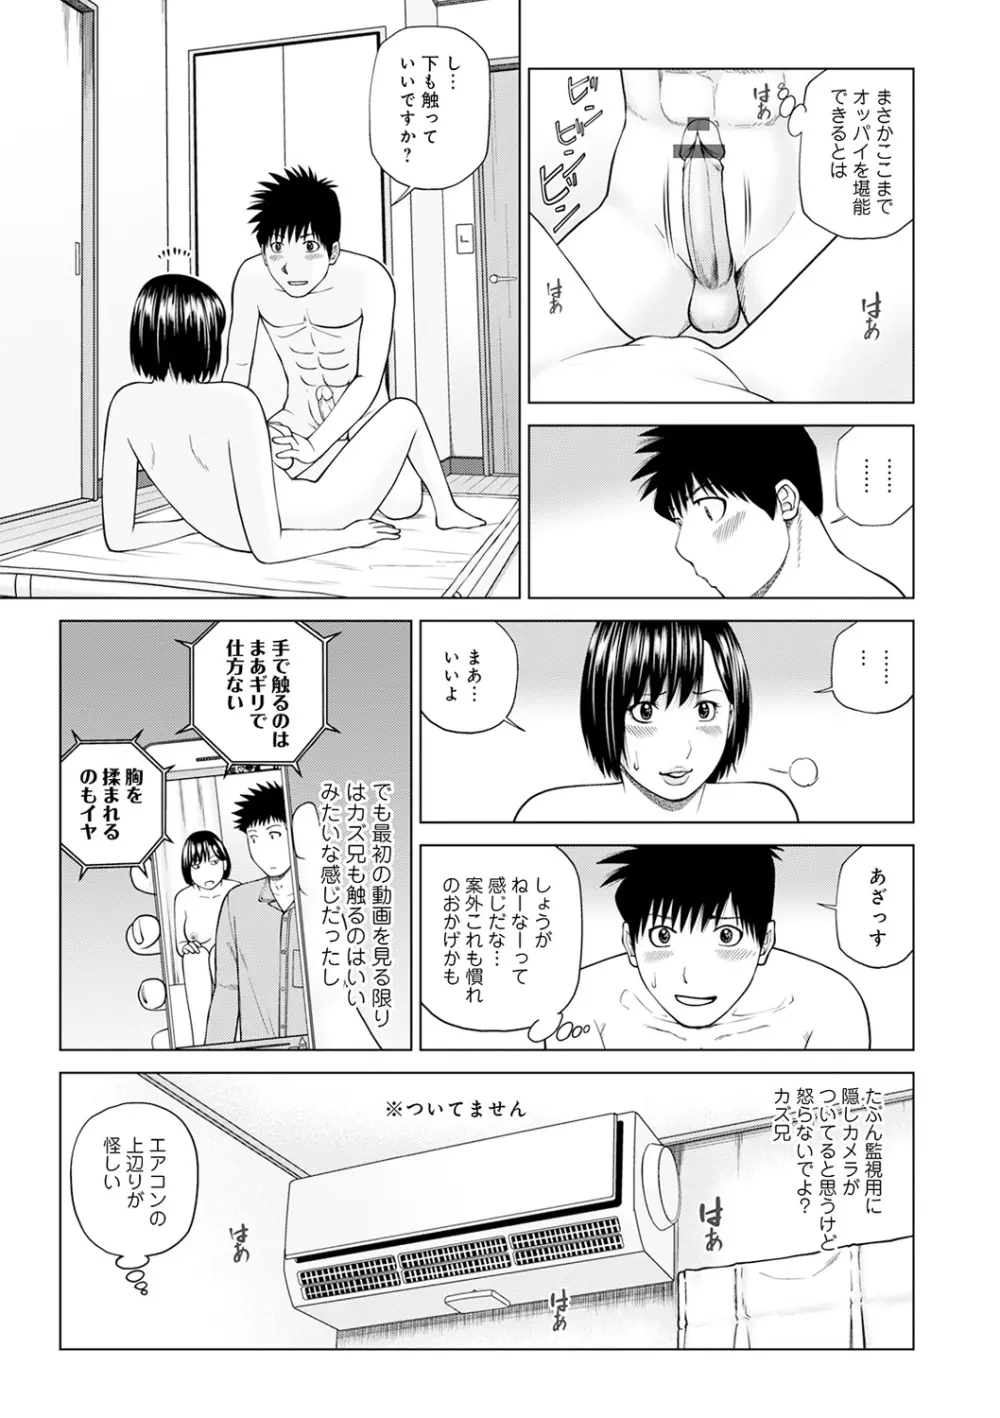 WEB版コミック激ヤバ! Vol.143 8ページ